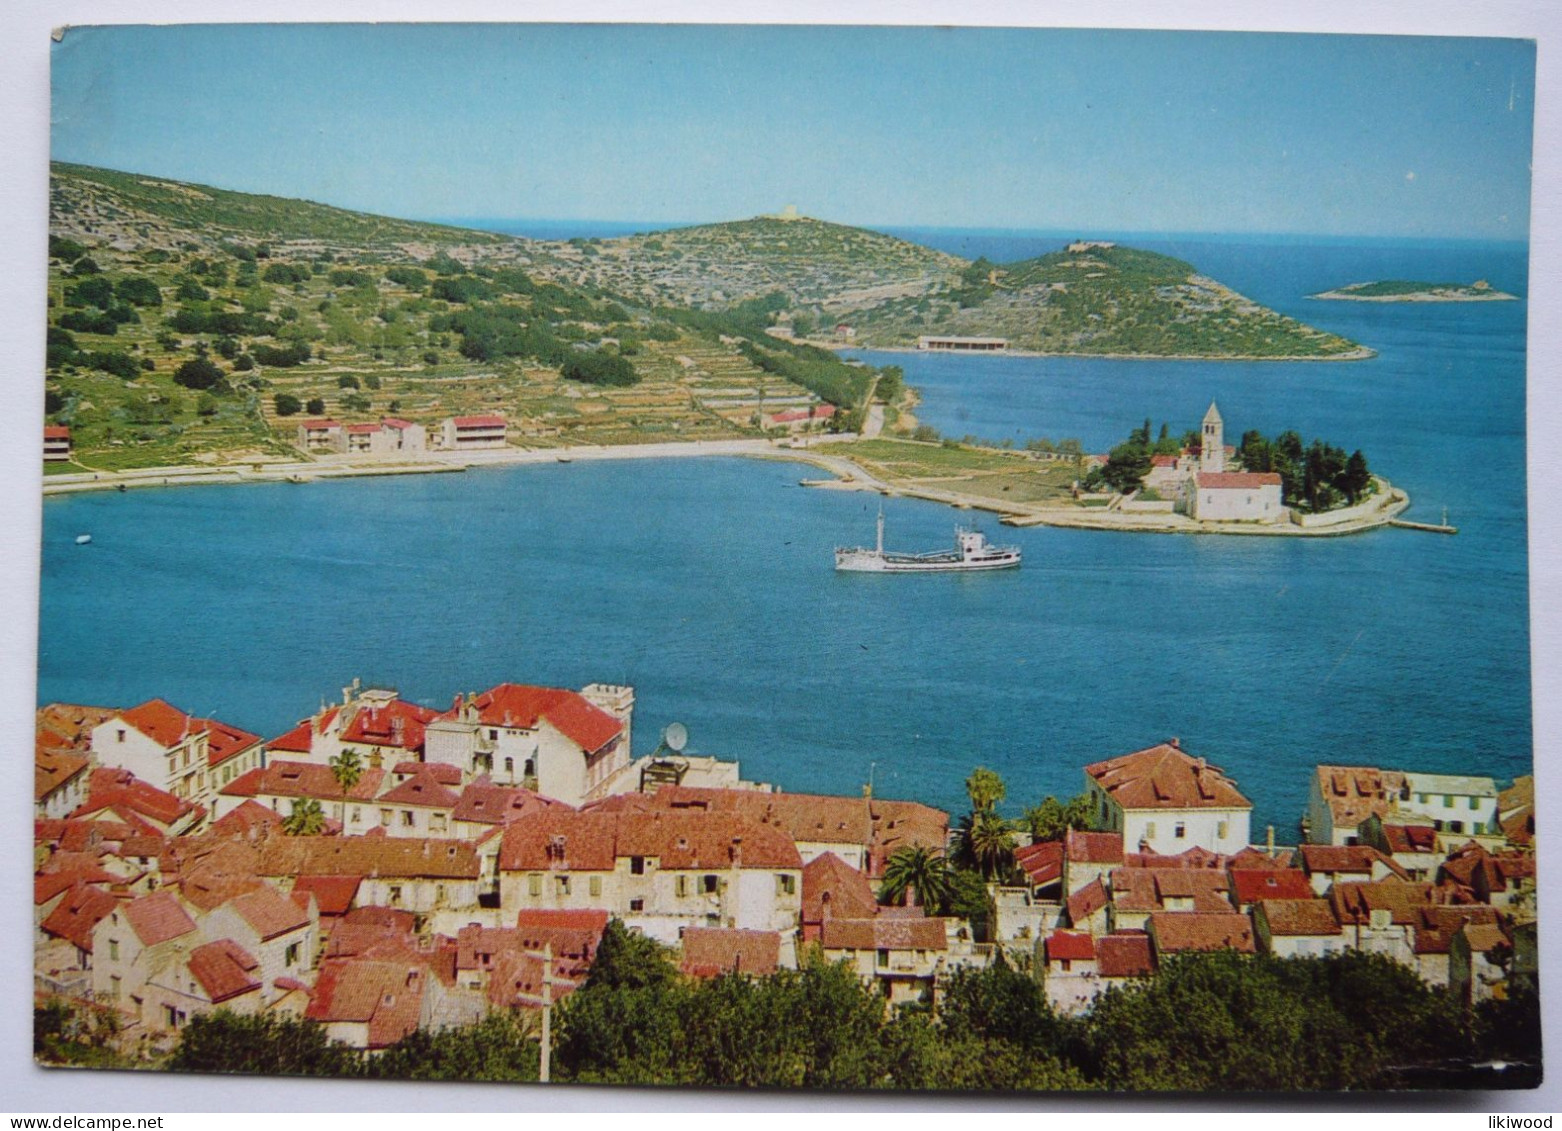 Otok Vis (Island Vis) - Croatia